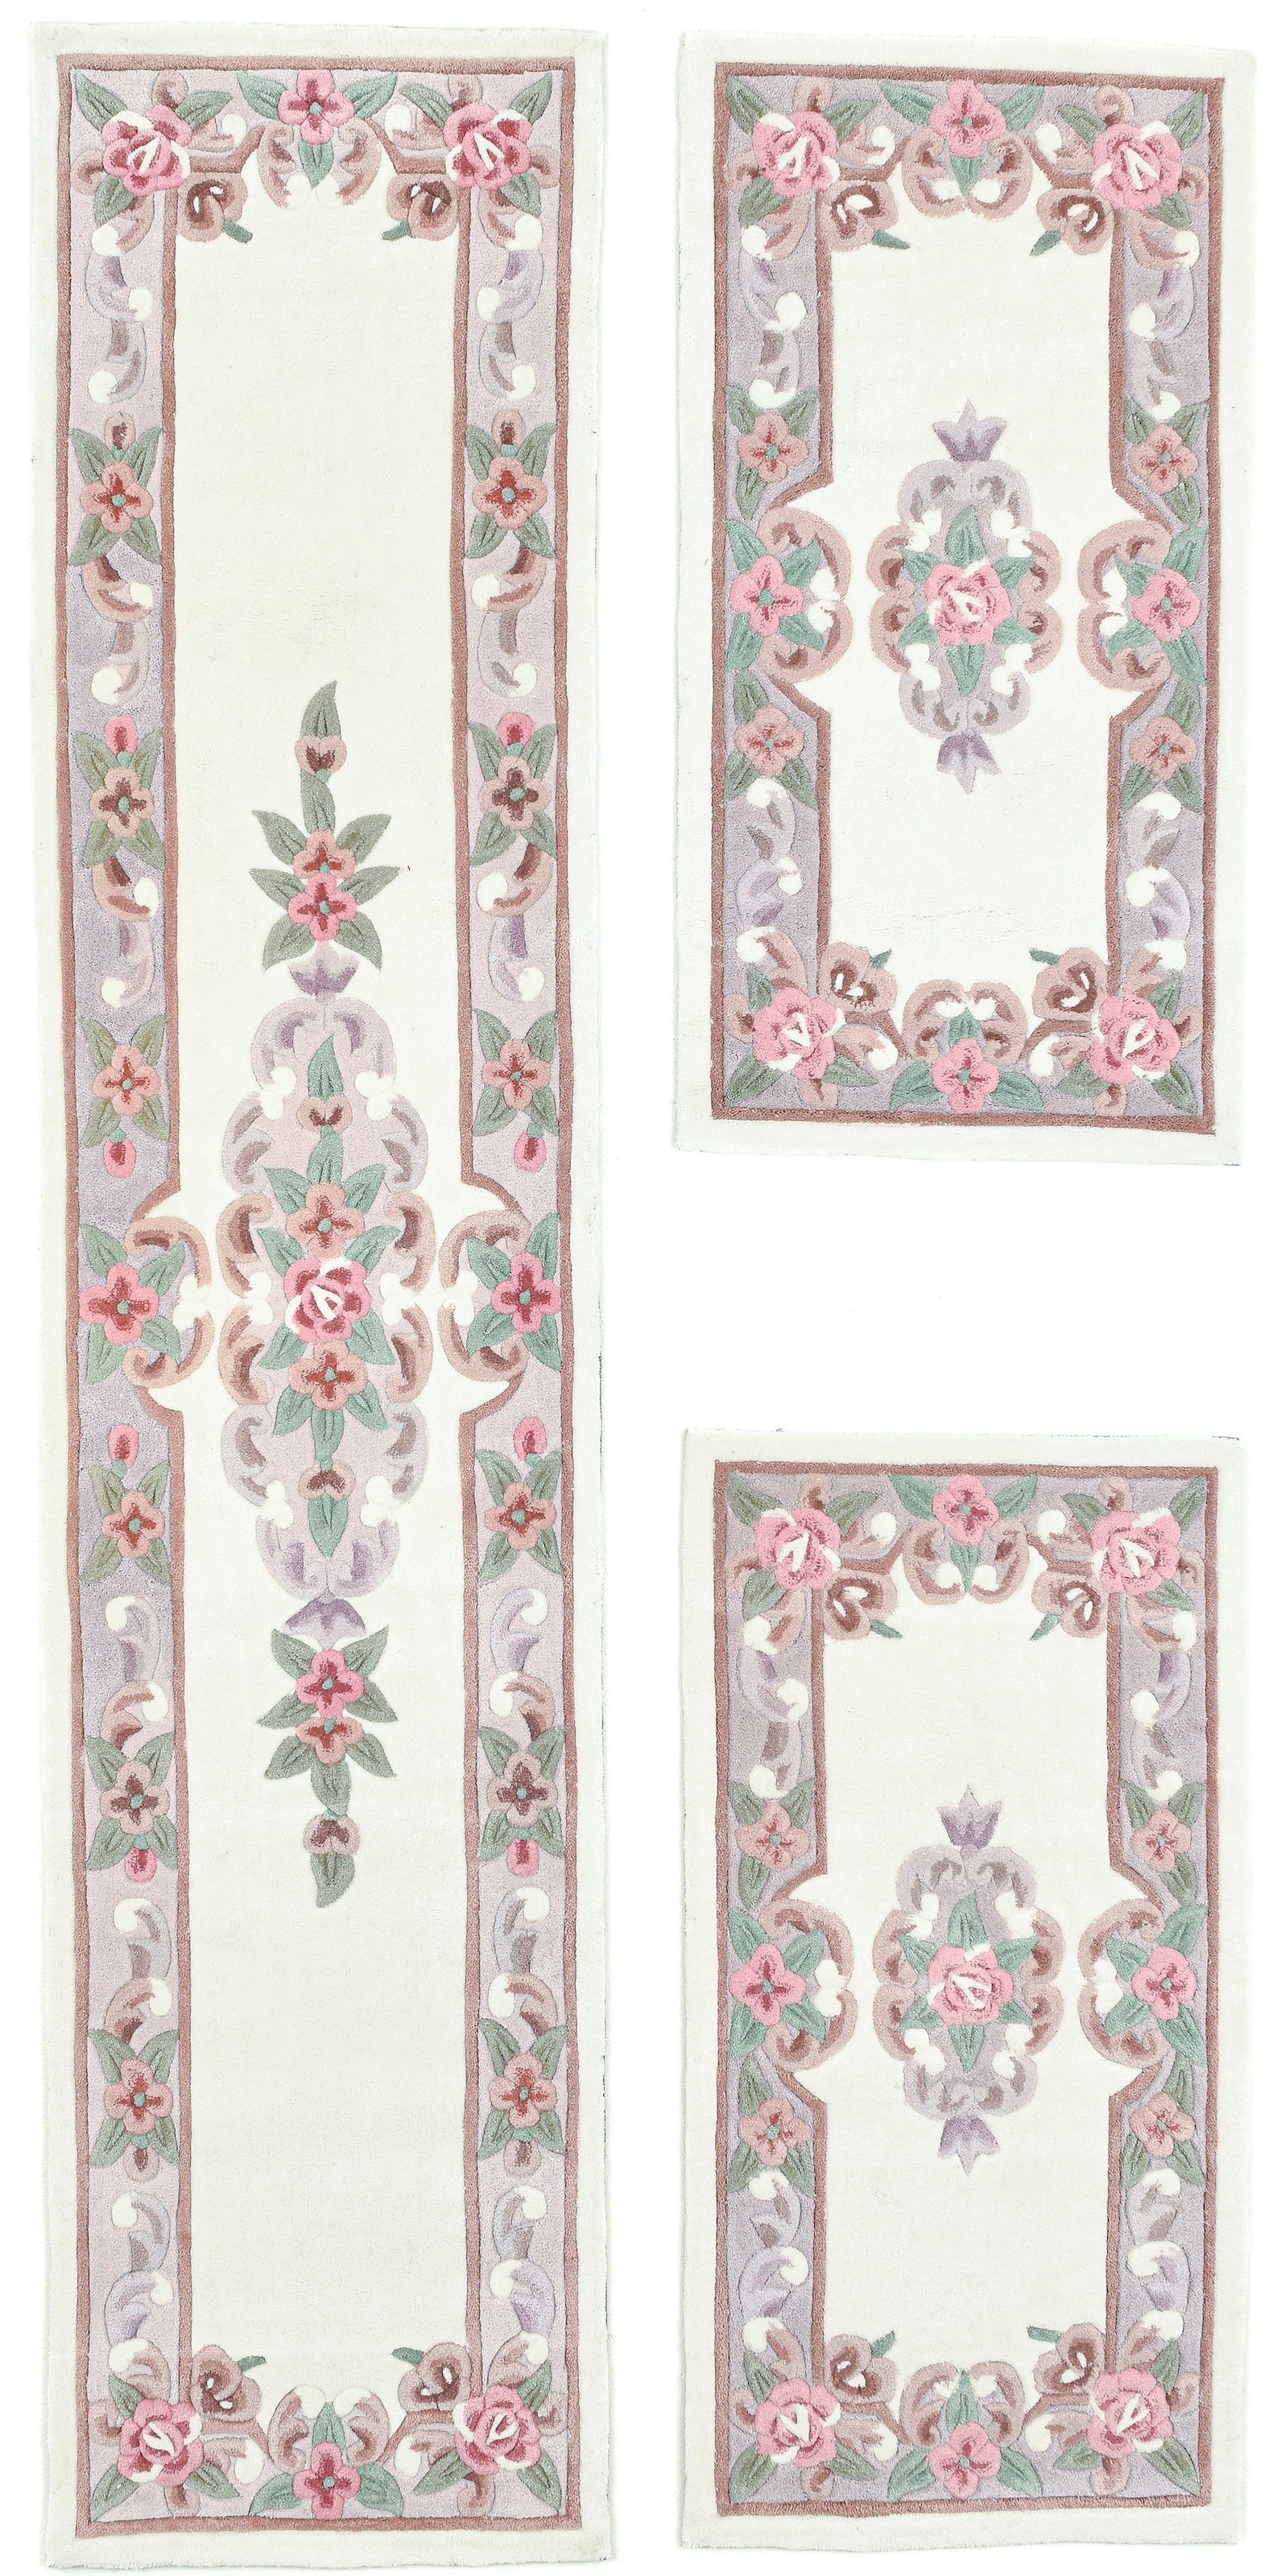 THEKO Bettumrandung »Ming«, (3 tlg.), Bettvorleger, Läufer-Set, hochwertiges Acrylgarn, florales Design